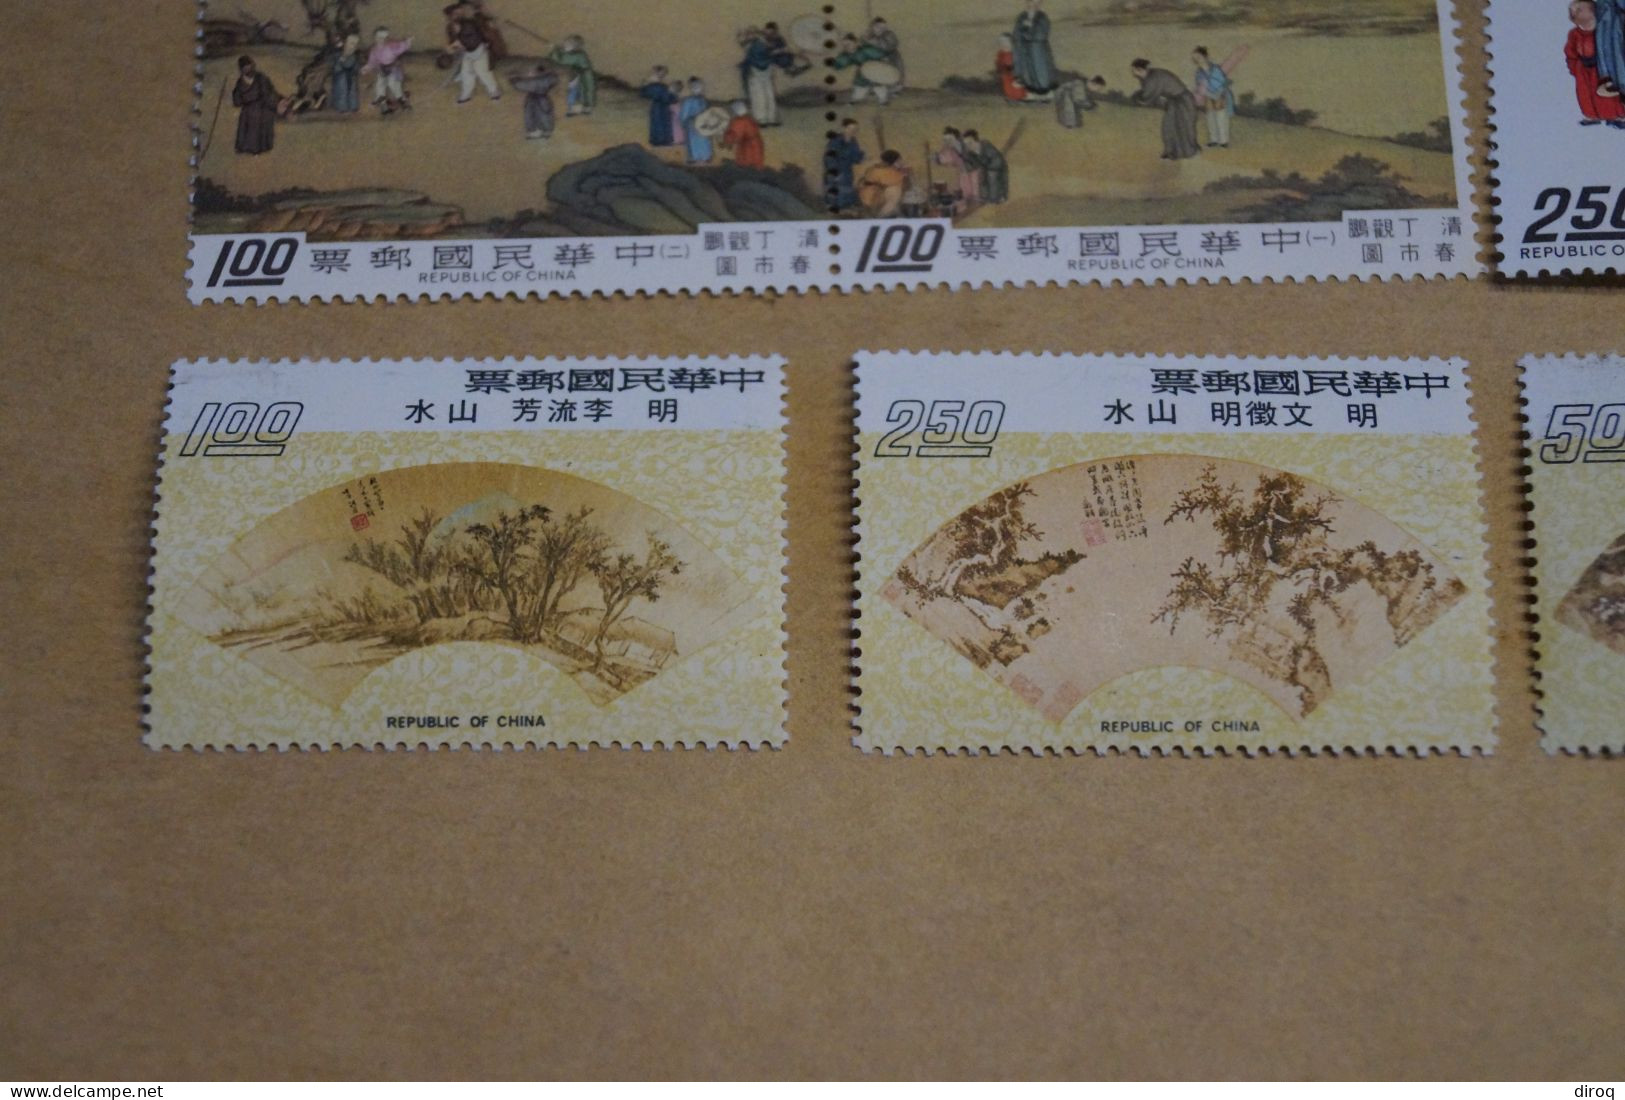 Chine,Chines,belle série de 11 timbres à l'état neuf,mint pour collection,collector